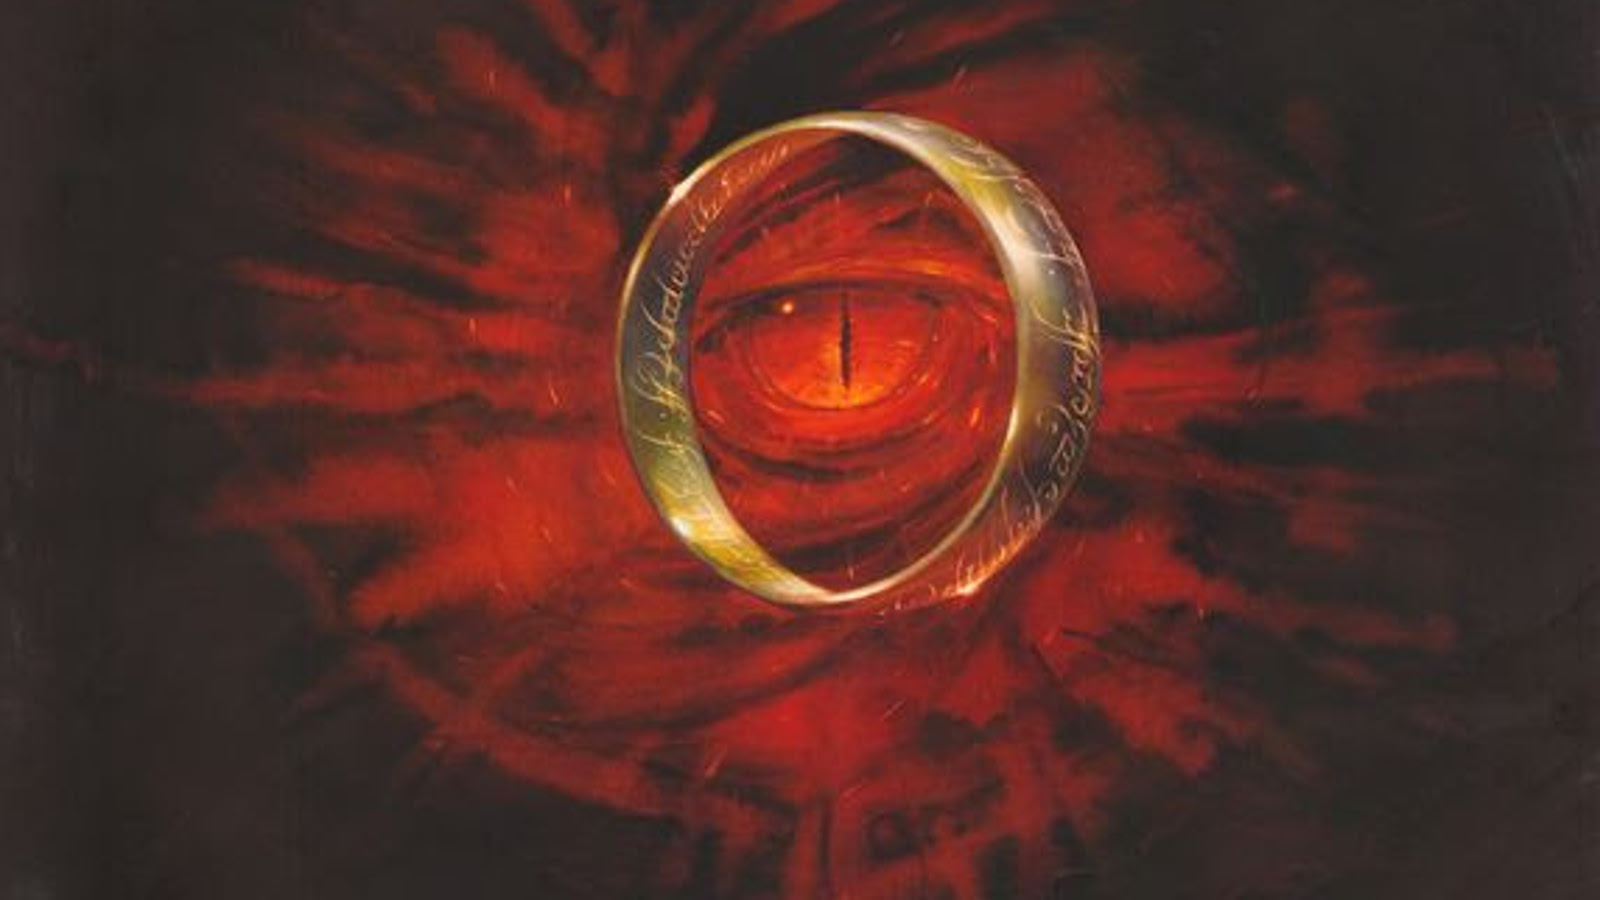 Kuvassa on mustalla pohjalla punaisesta silmästä lähteviä punaisia liekkejä.  Silmän ympärillä on kultainen sormus, jossa on sisällä kaiverrettua tekstiä.